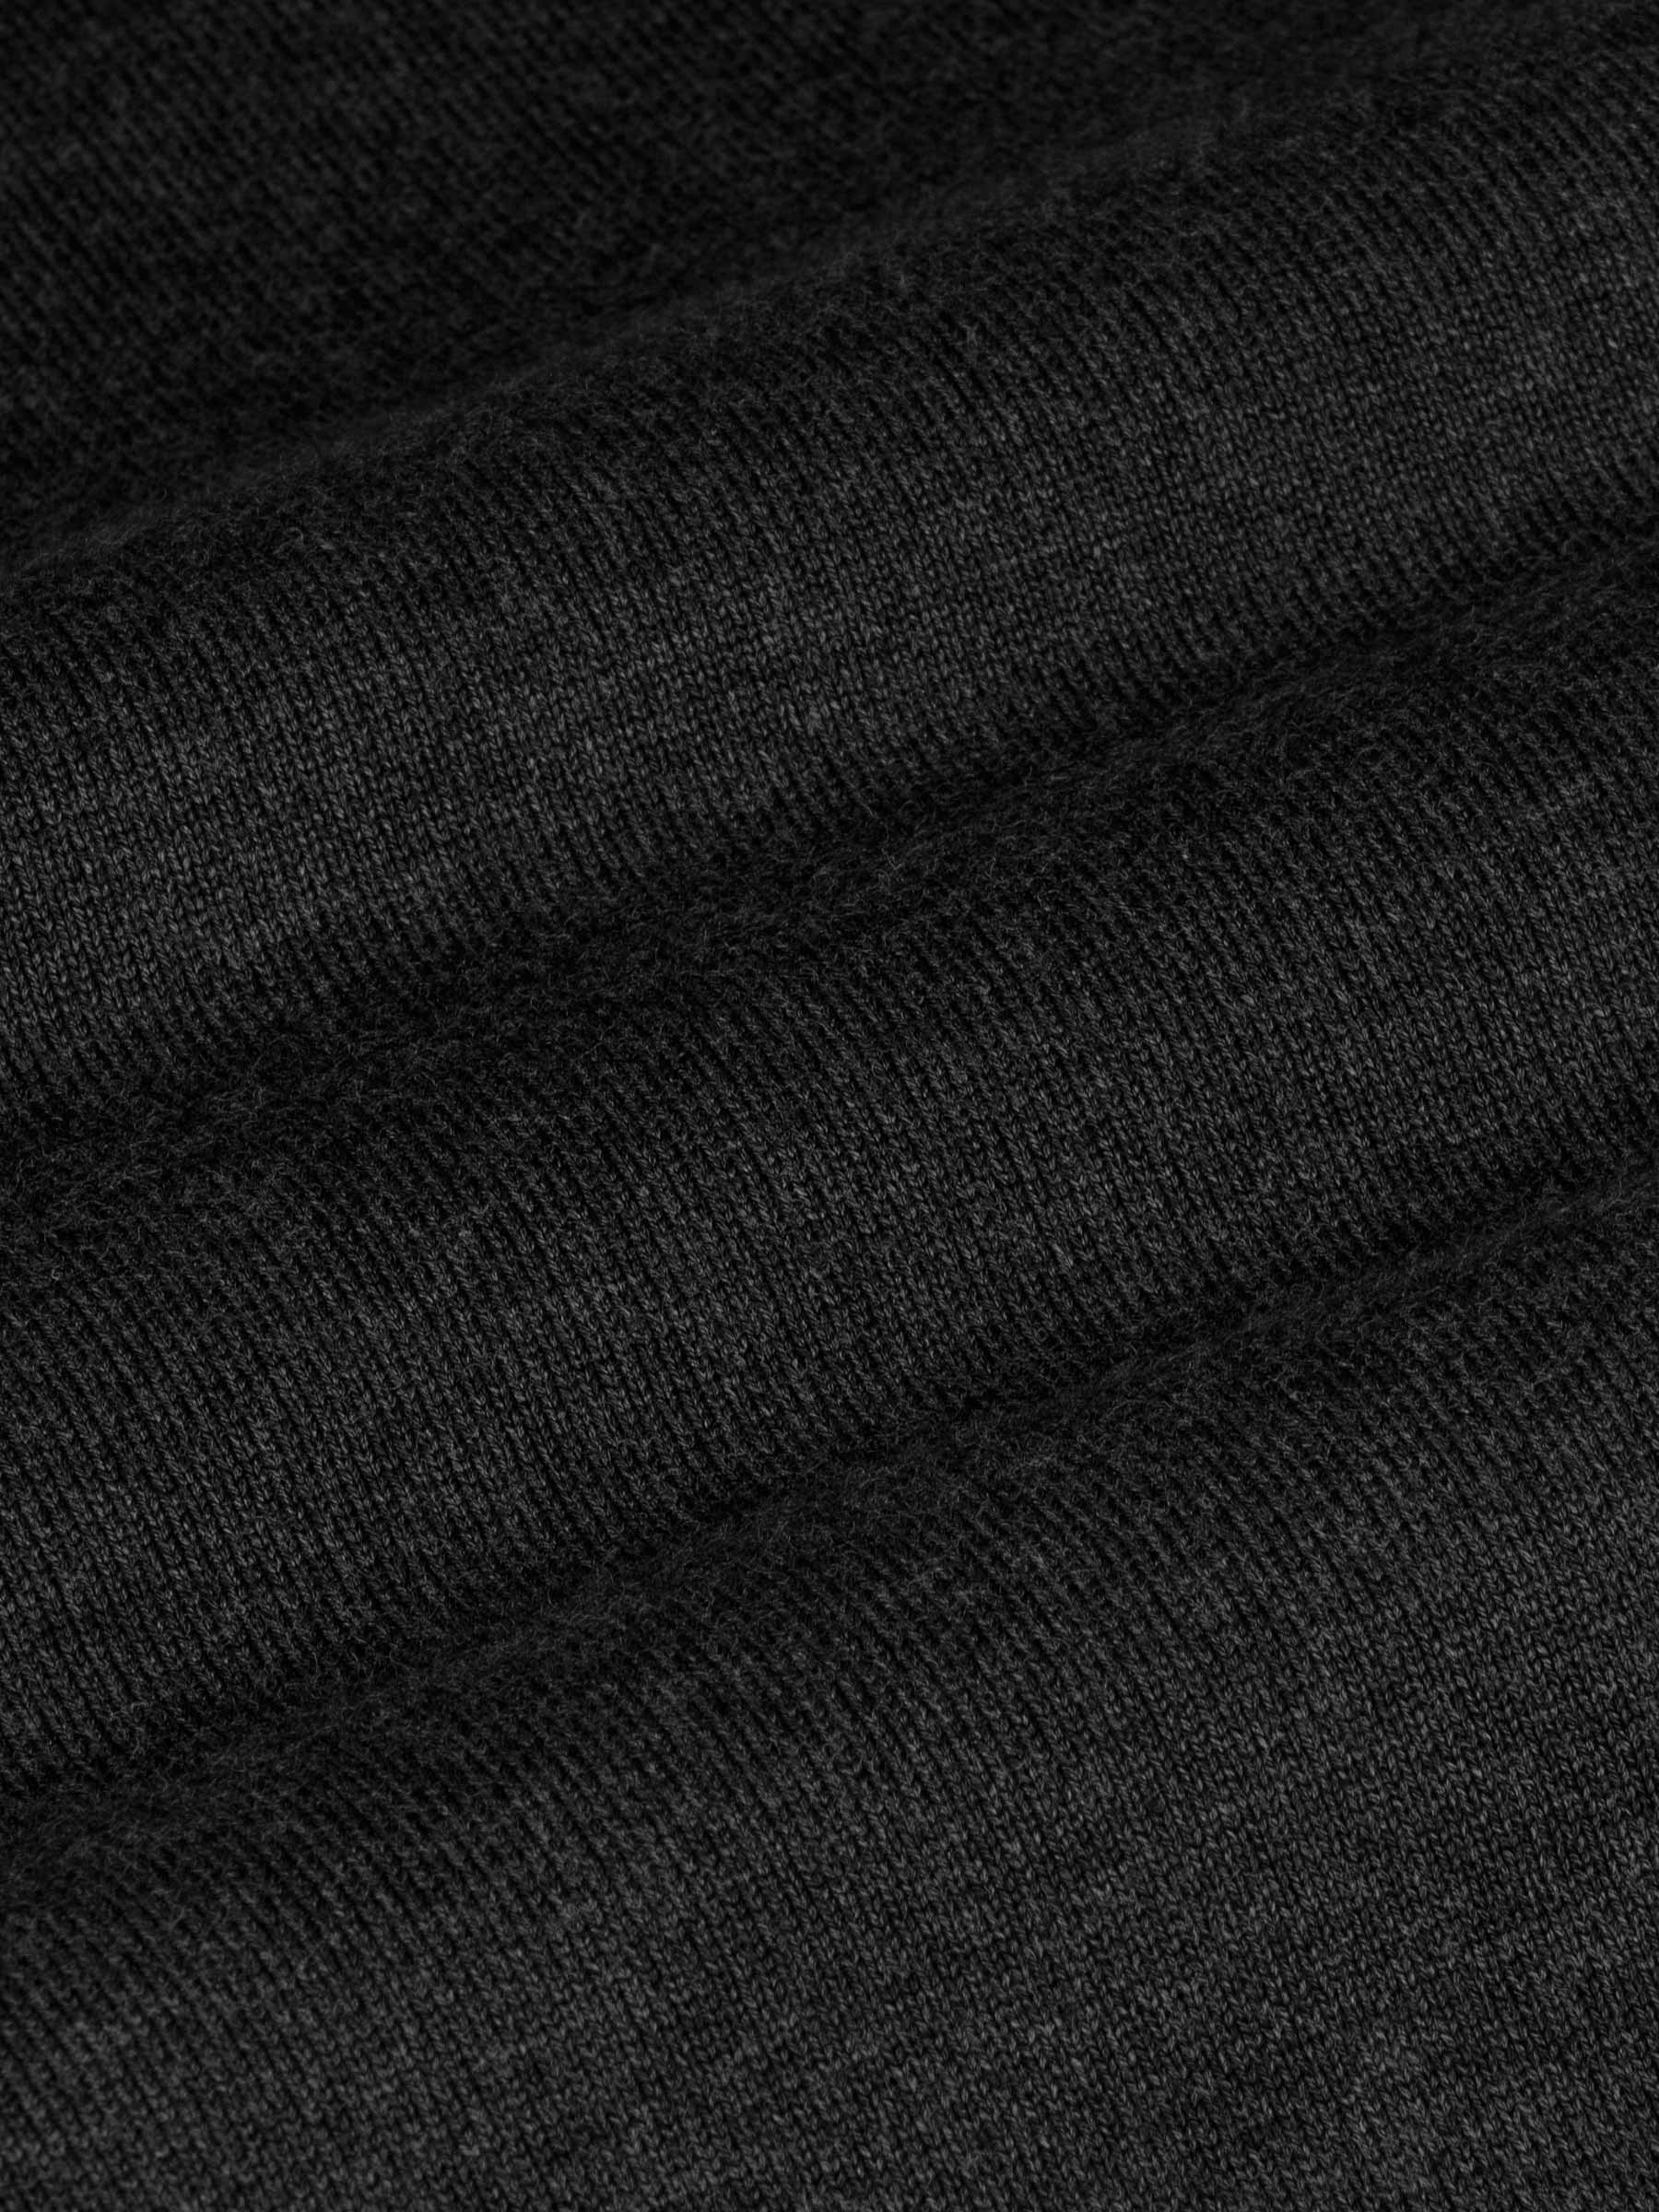 Athens V-Neck Black Sweater-L